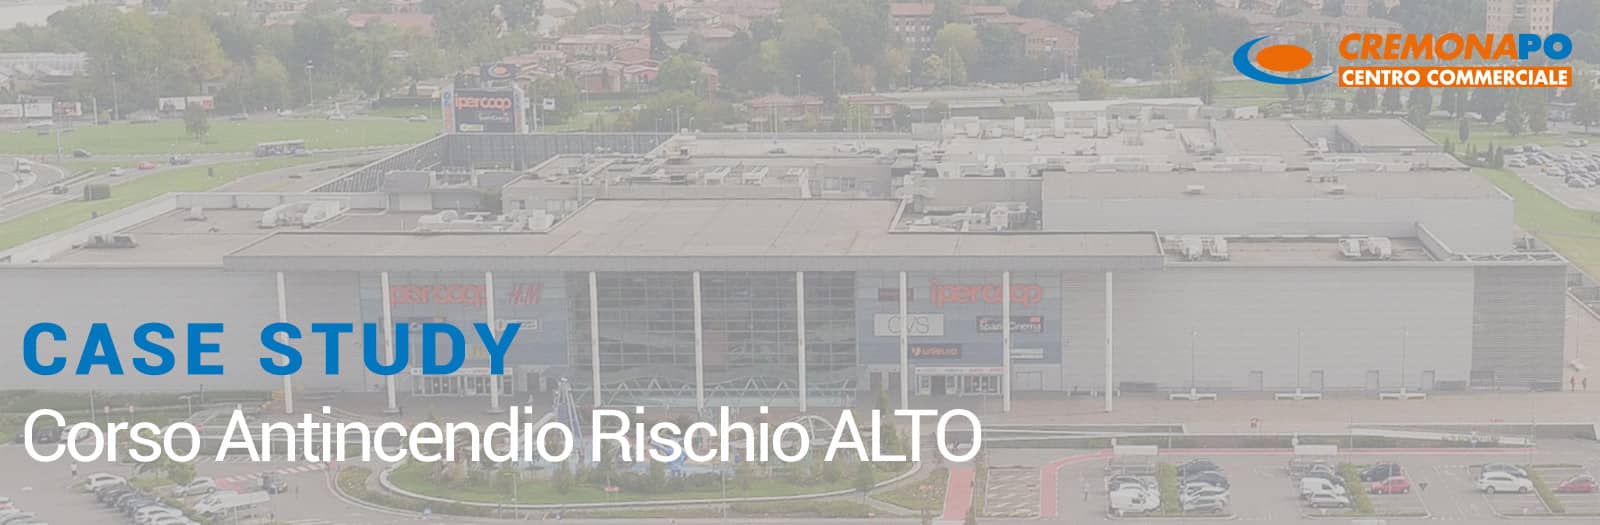 CASE STUDY Centro Commerciale Cremona PO – FORMAZIONE ANTINCENDIO RISCHIO ALTO